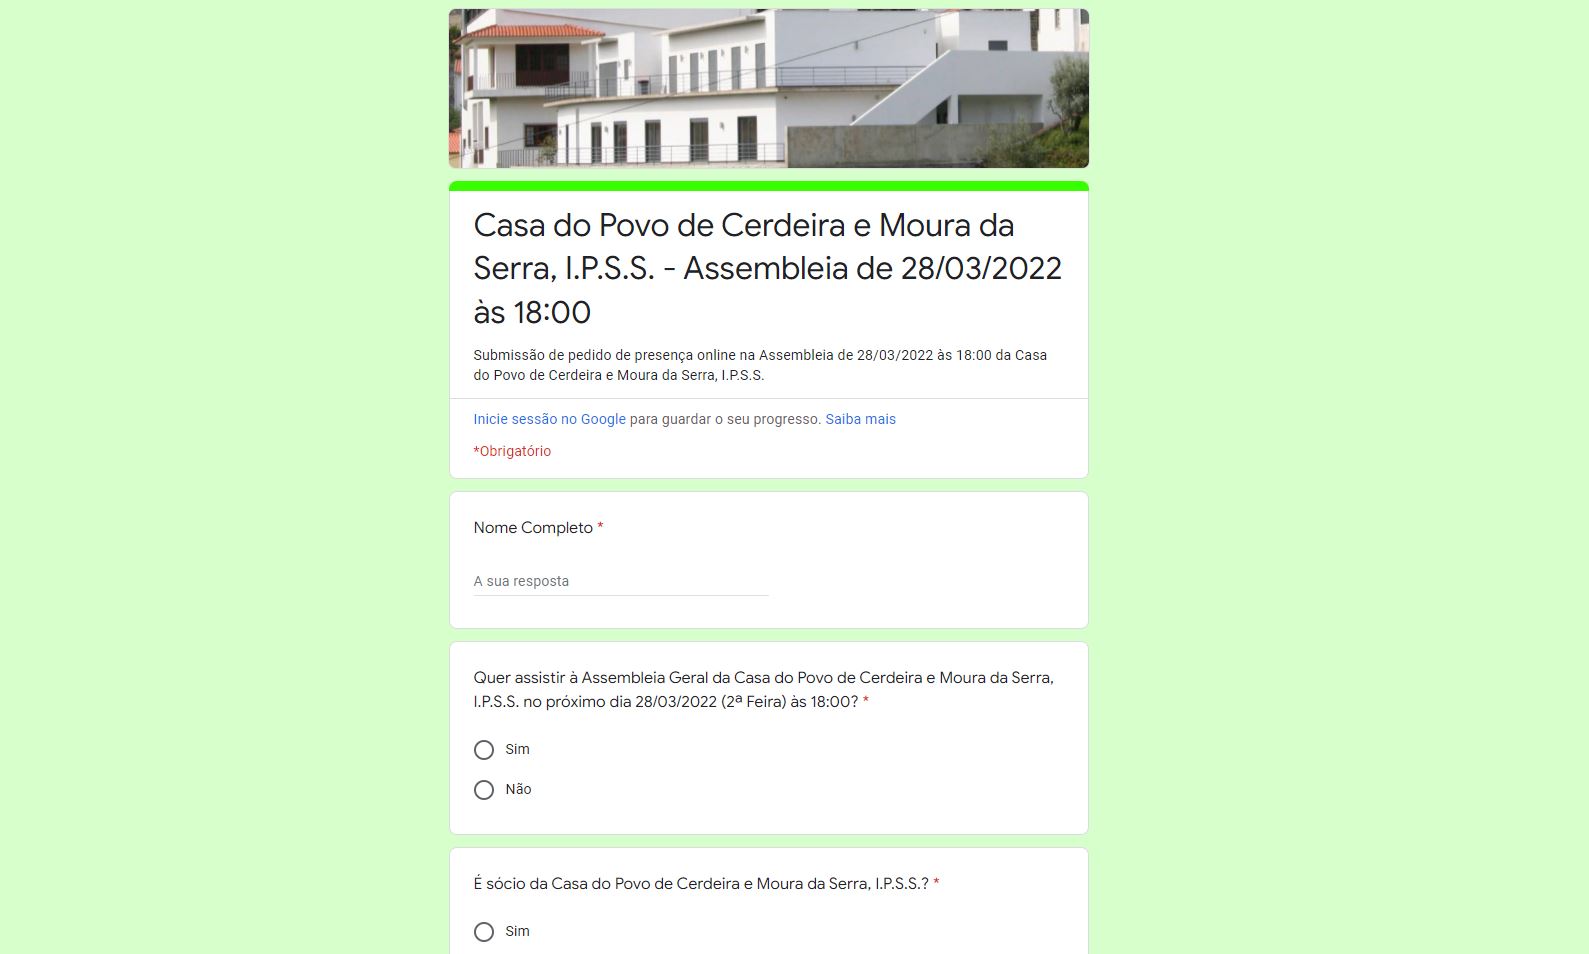 INFORMAÇÃO – Assembleia Geral da Casa do Povo de Cerdeira e Moura da Serra, I.P.S.S.